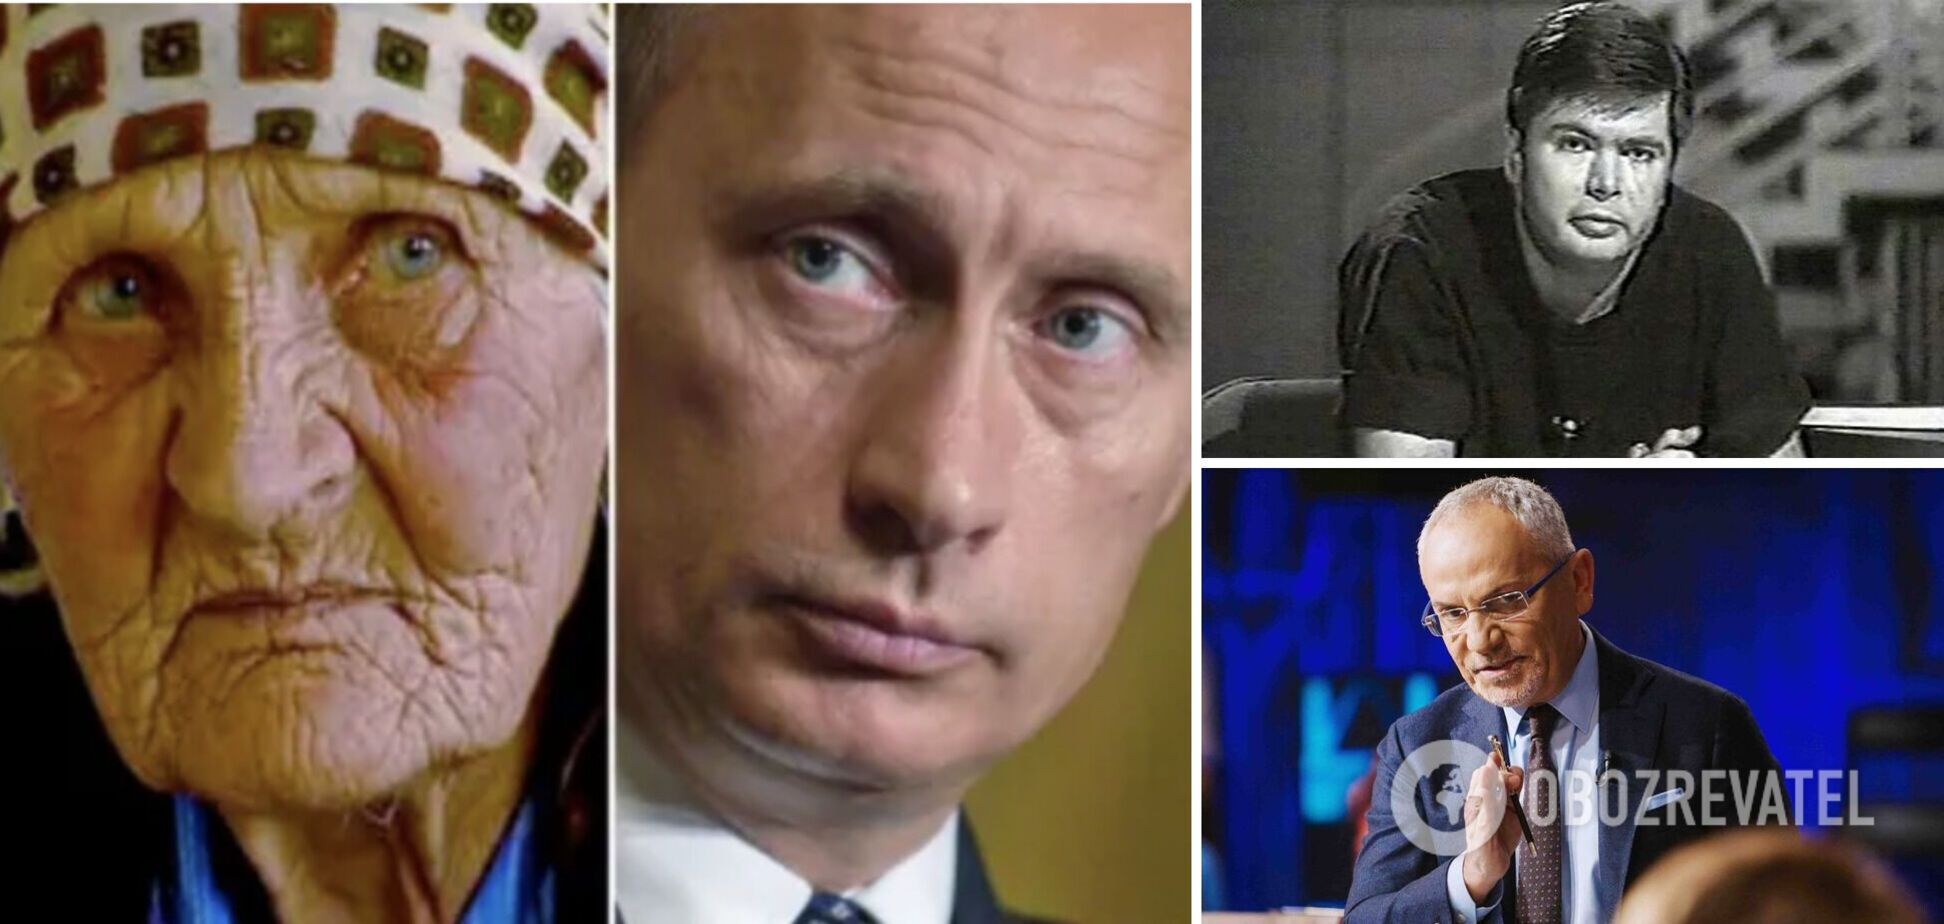 Самолет с журналистом взорвался: Шустер рассказал, какую 'страшную тайну' о себе скрывает Путин